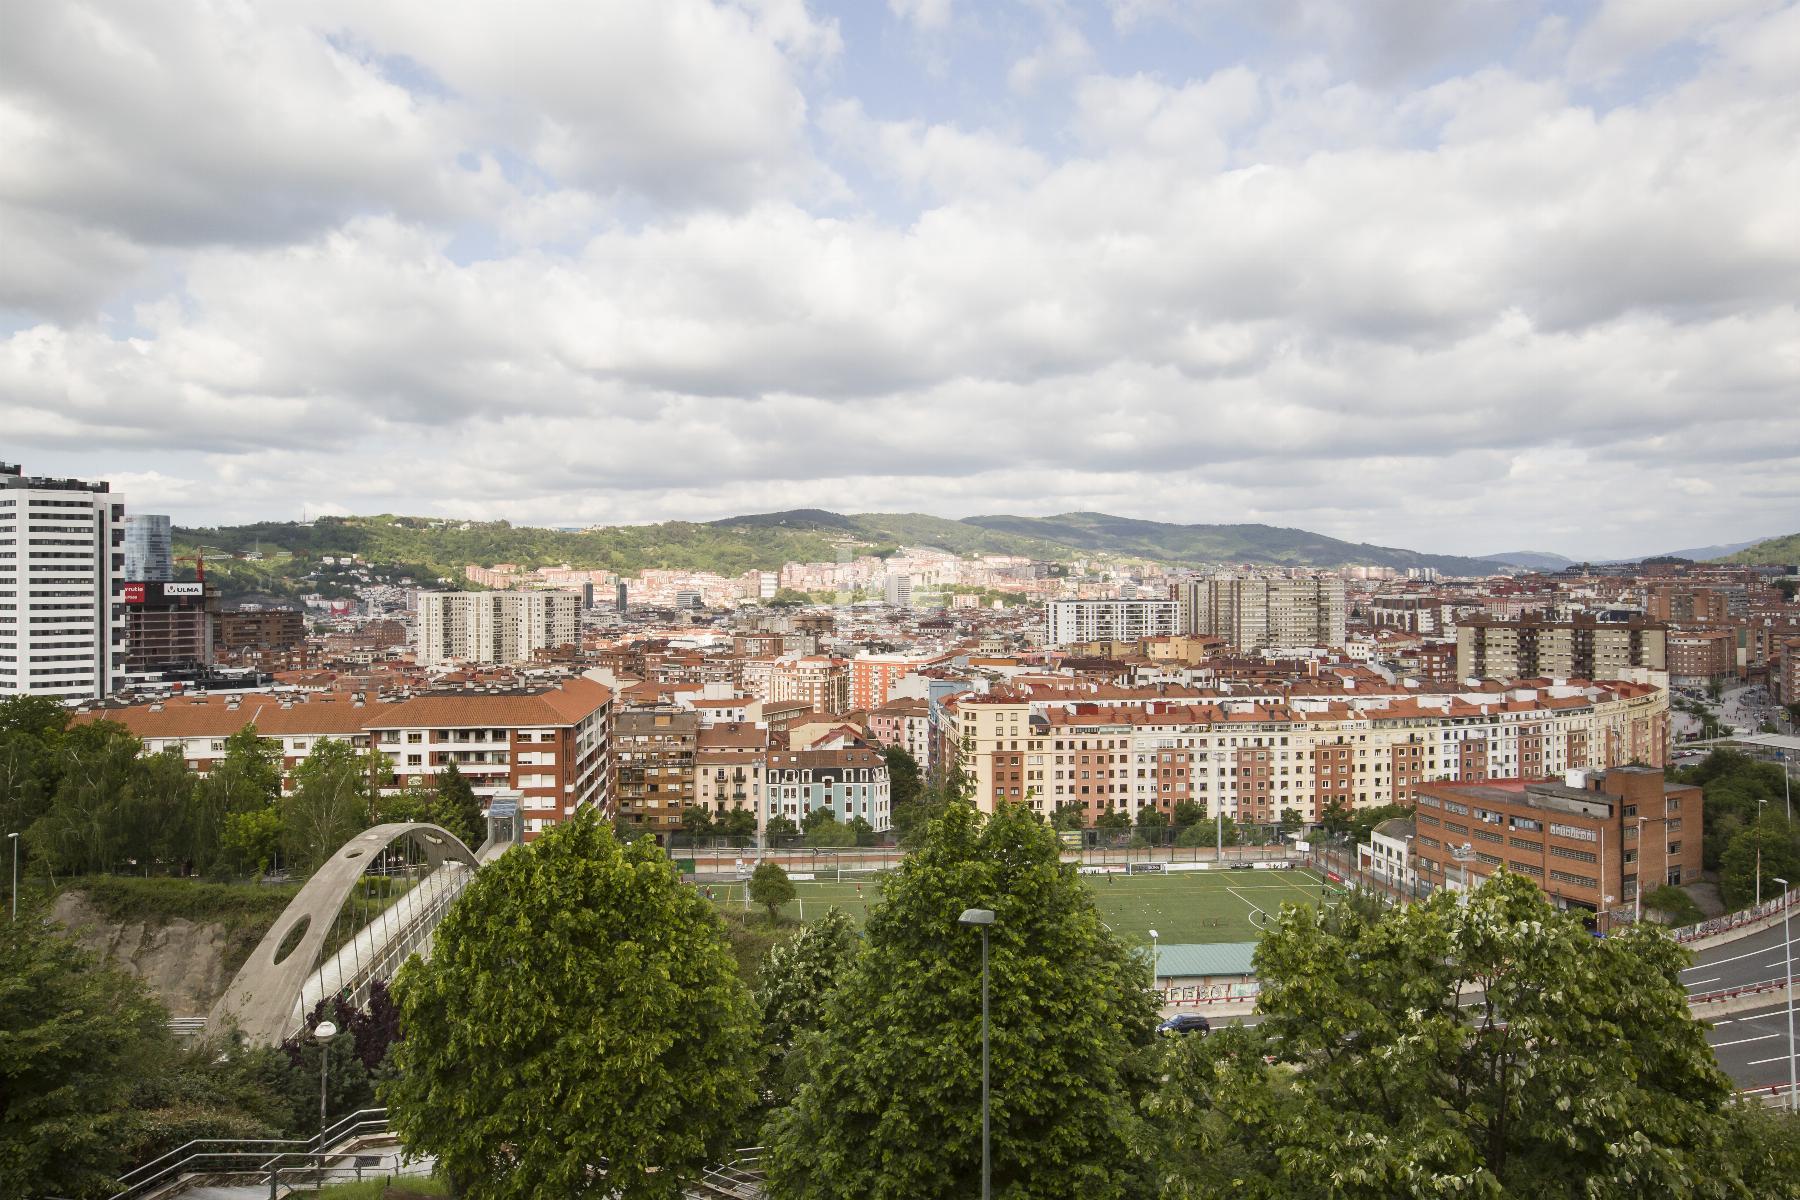 Vente de appartement dans Bilbao